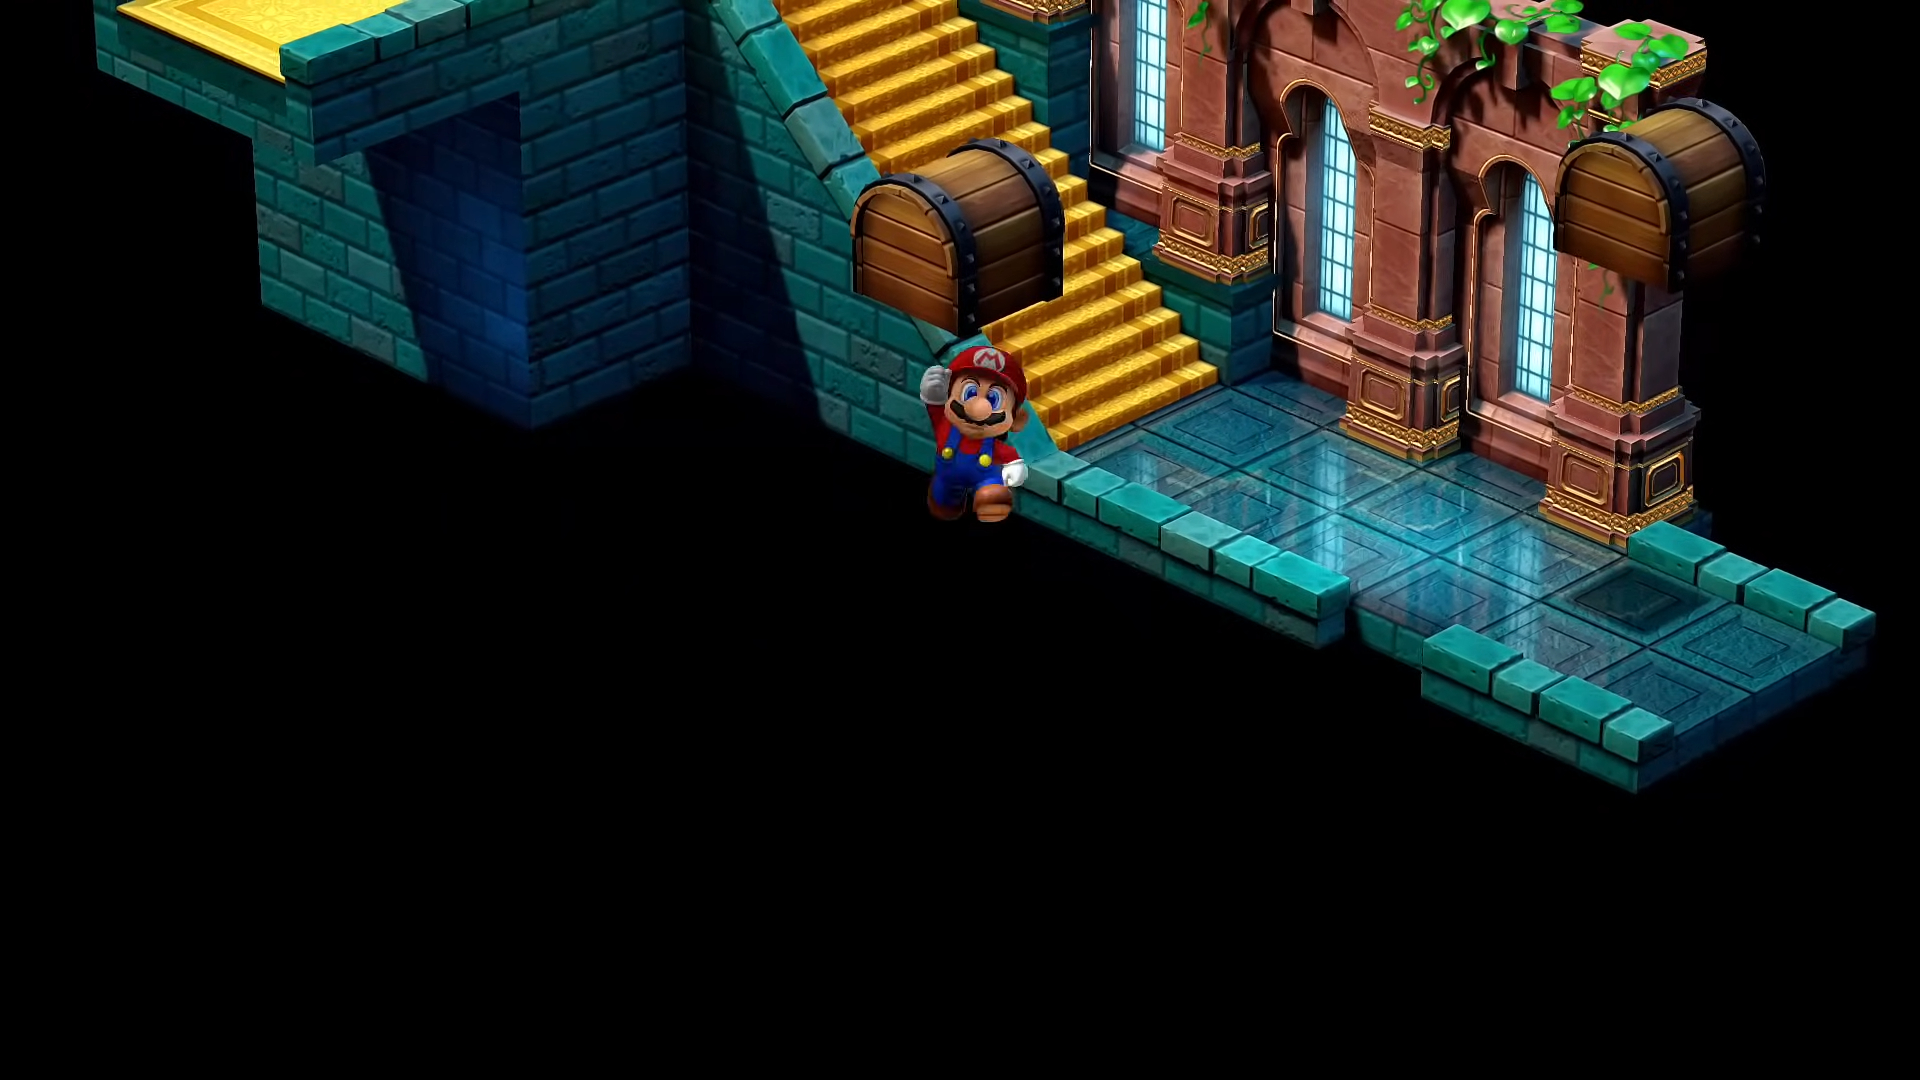 Mario in the numbus castle.